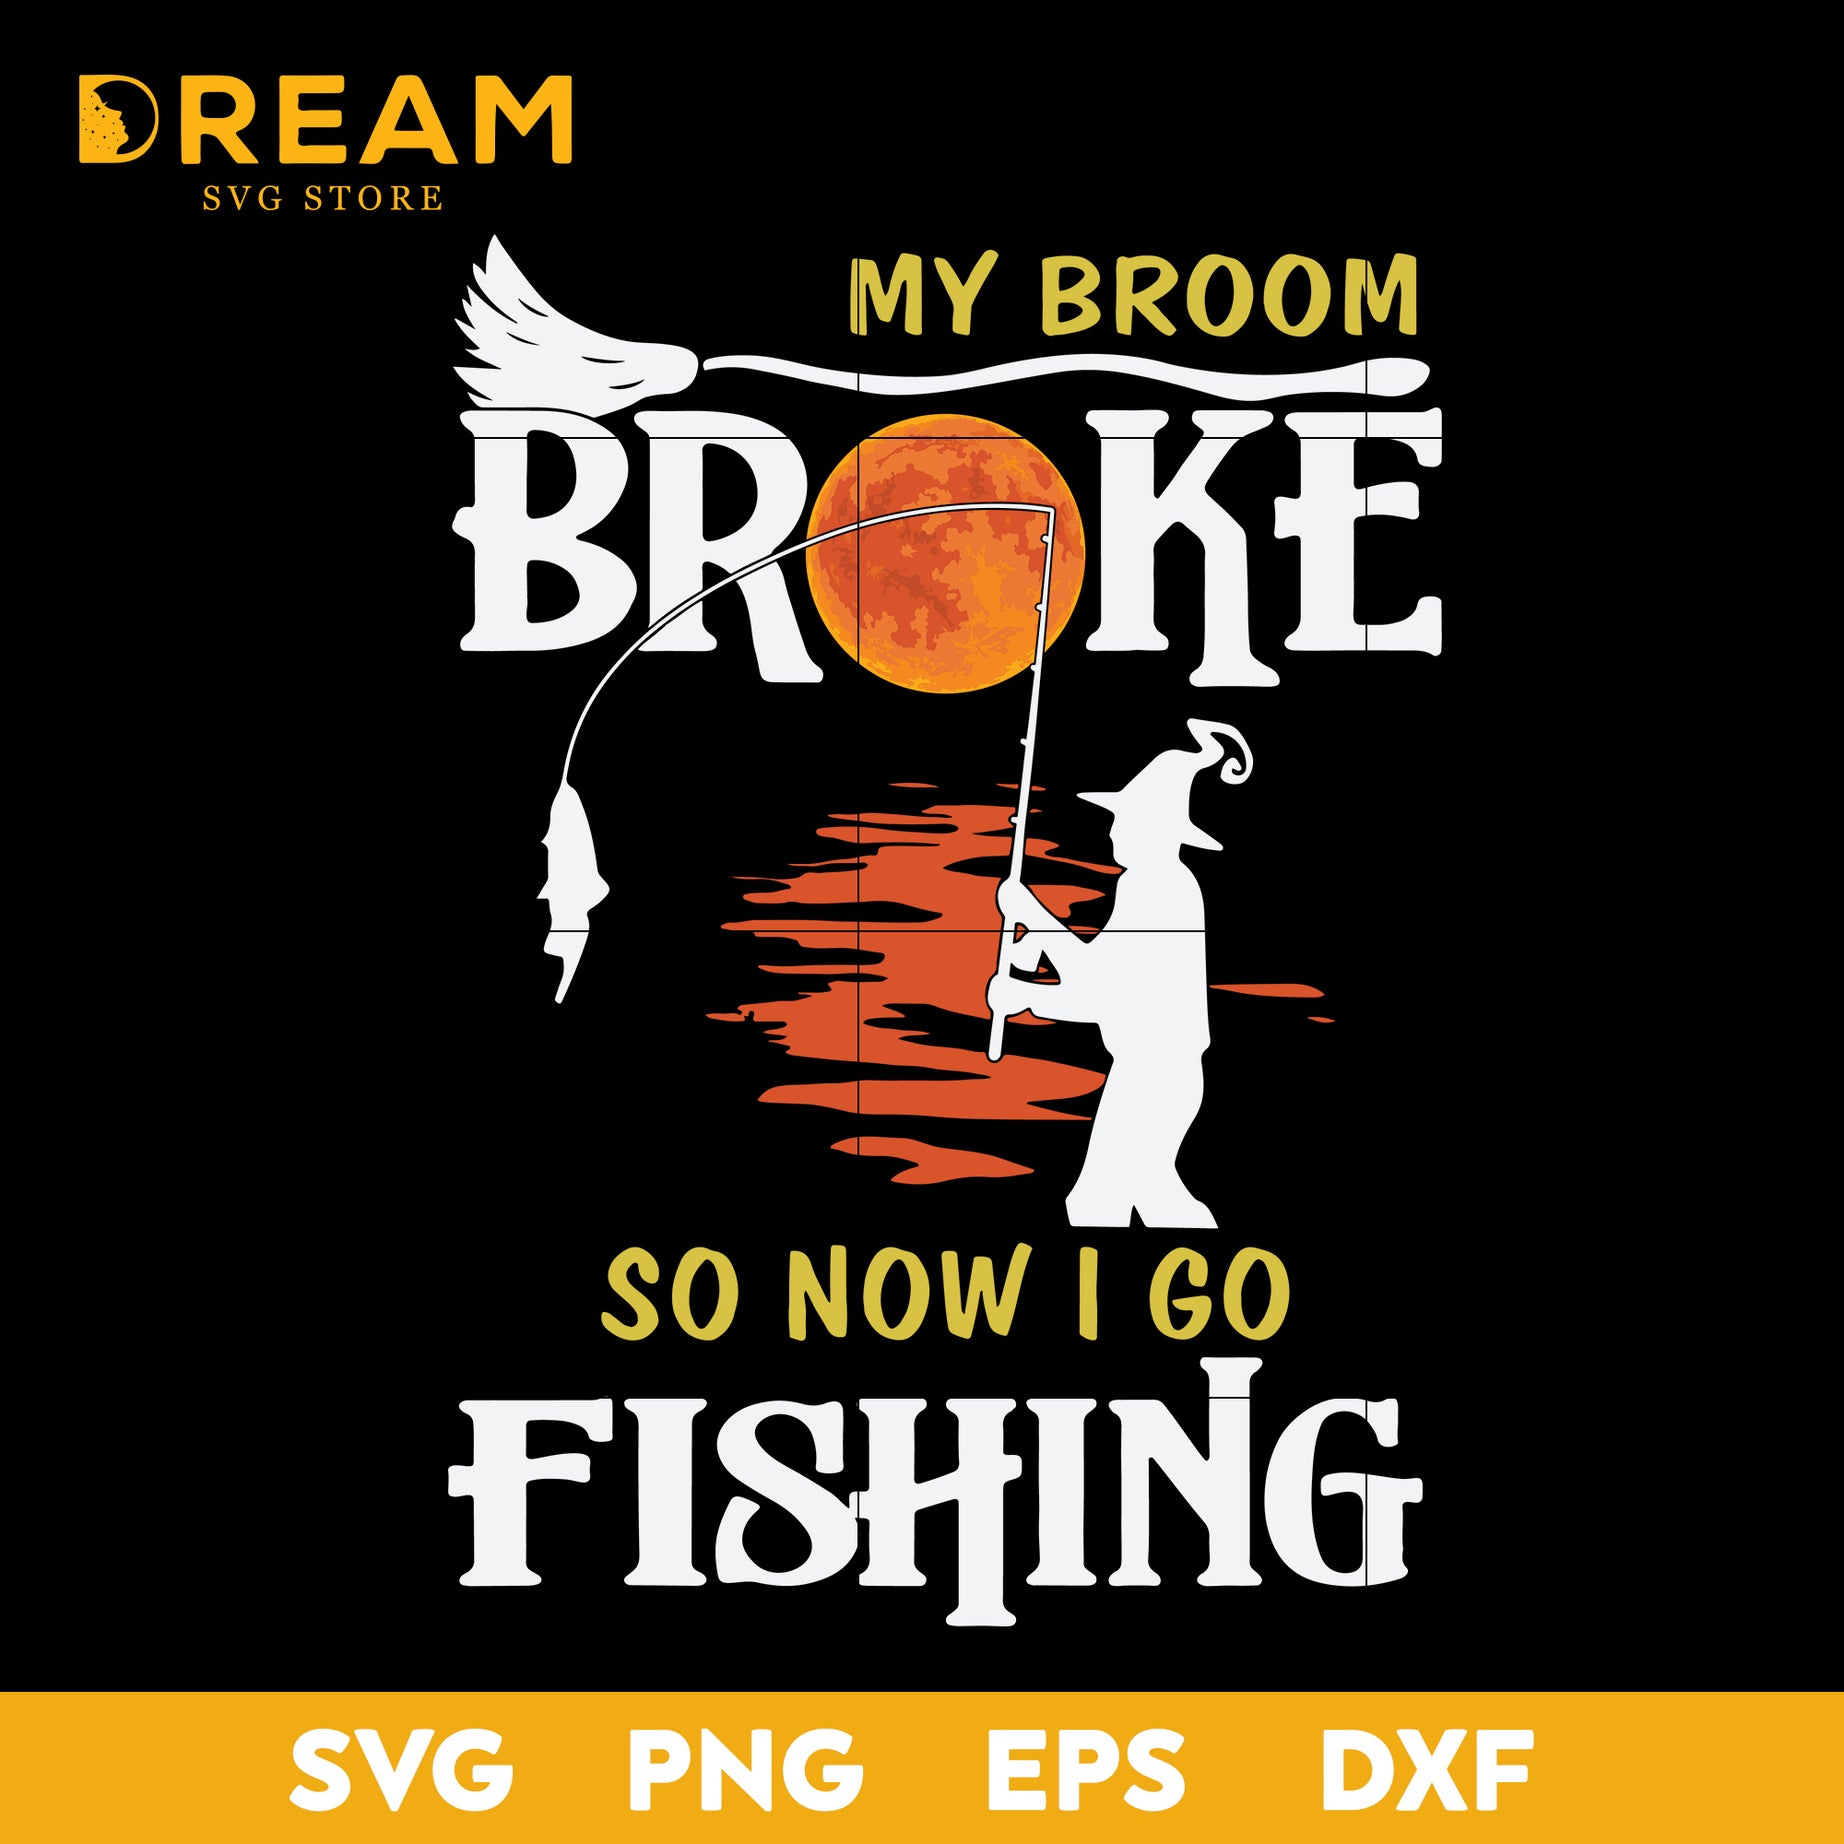 My broom broke so now i go fishing svg, Halloween svg, png, dxf, eps digital file HLW1509201L